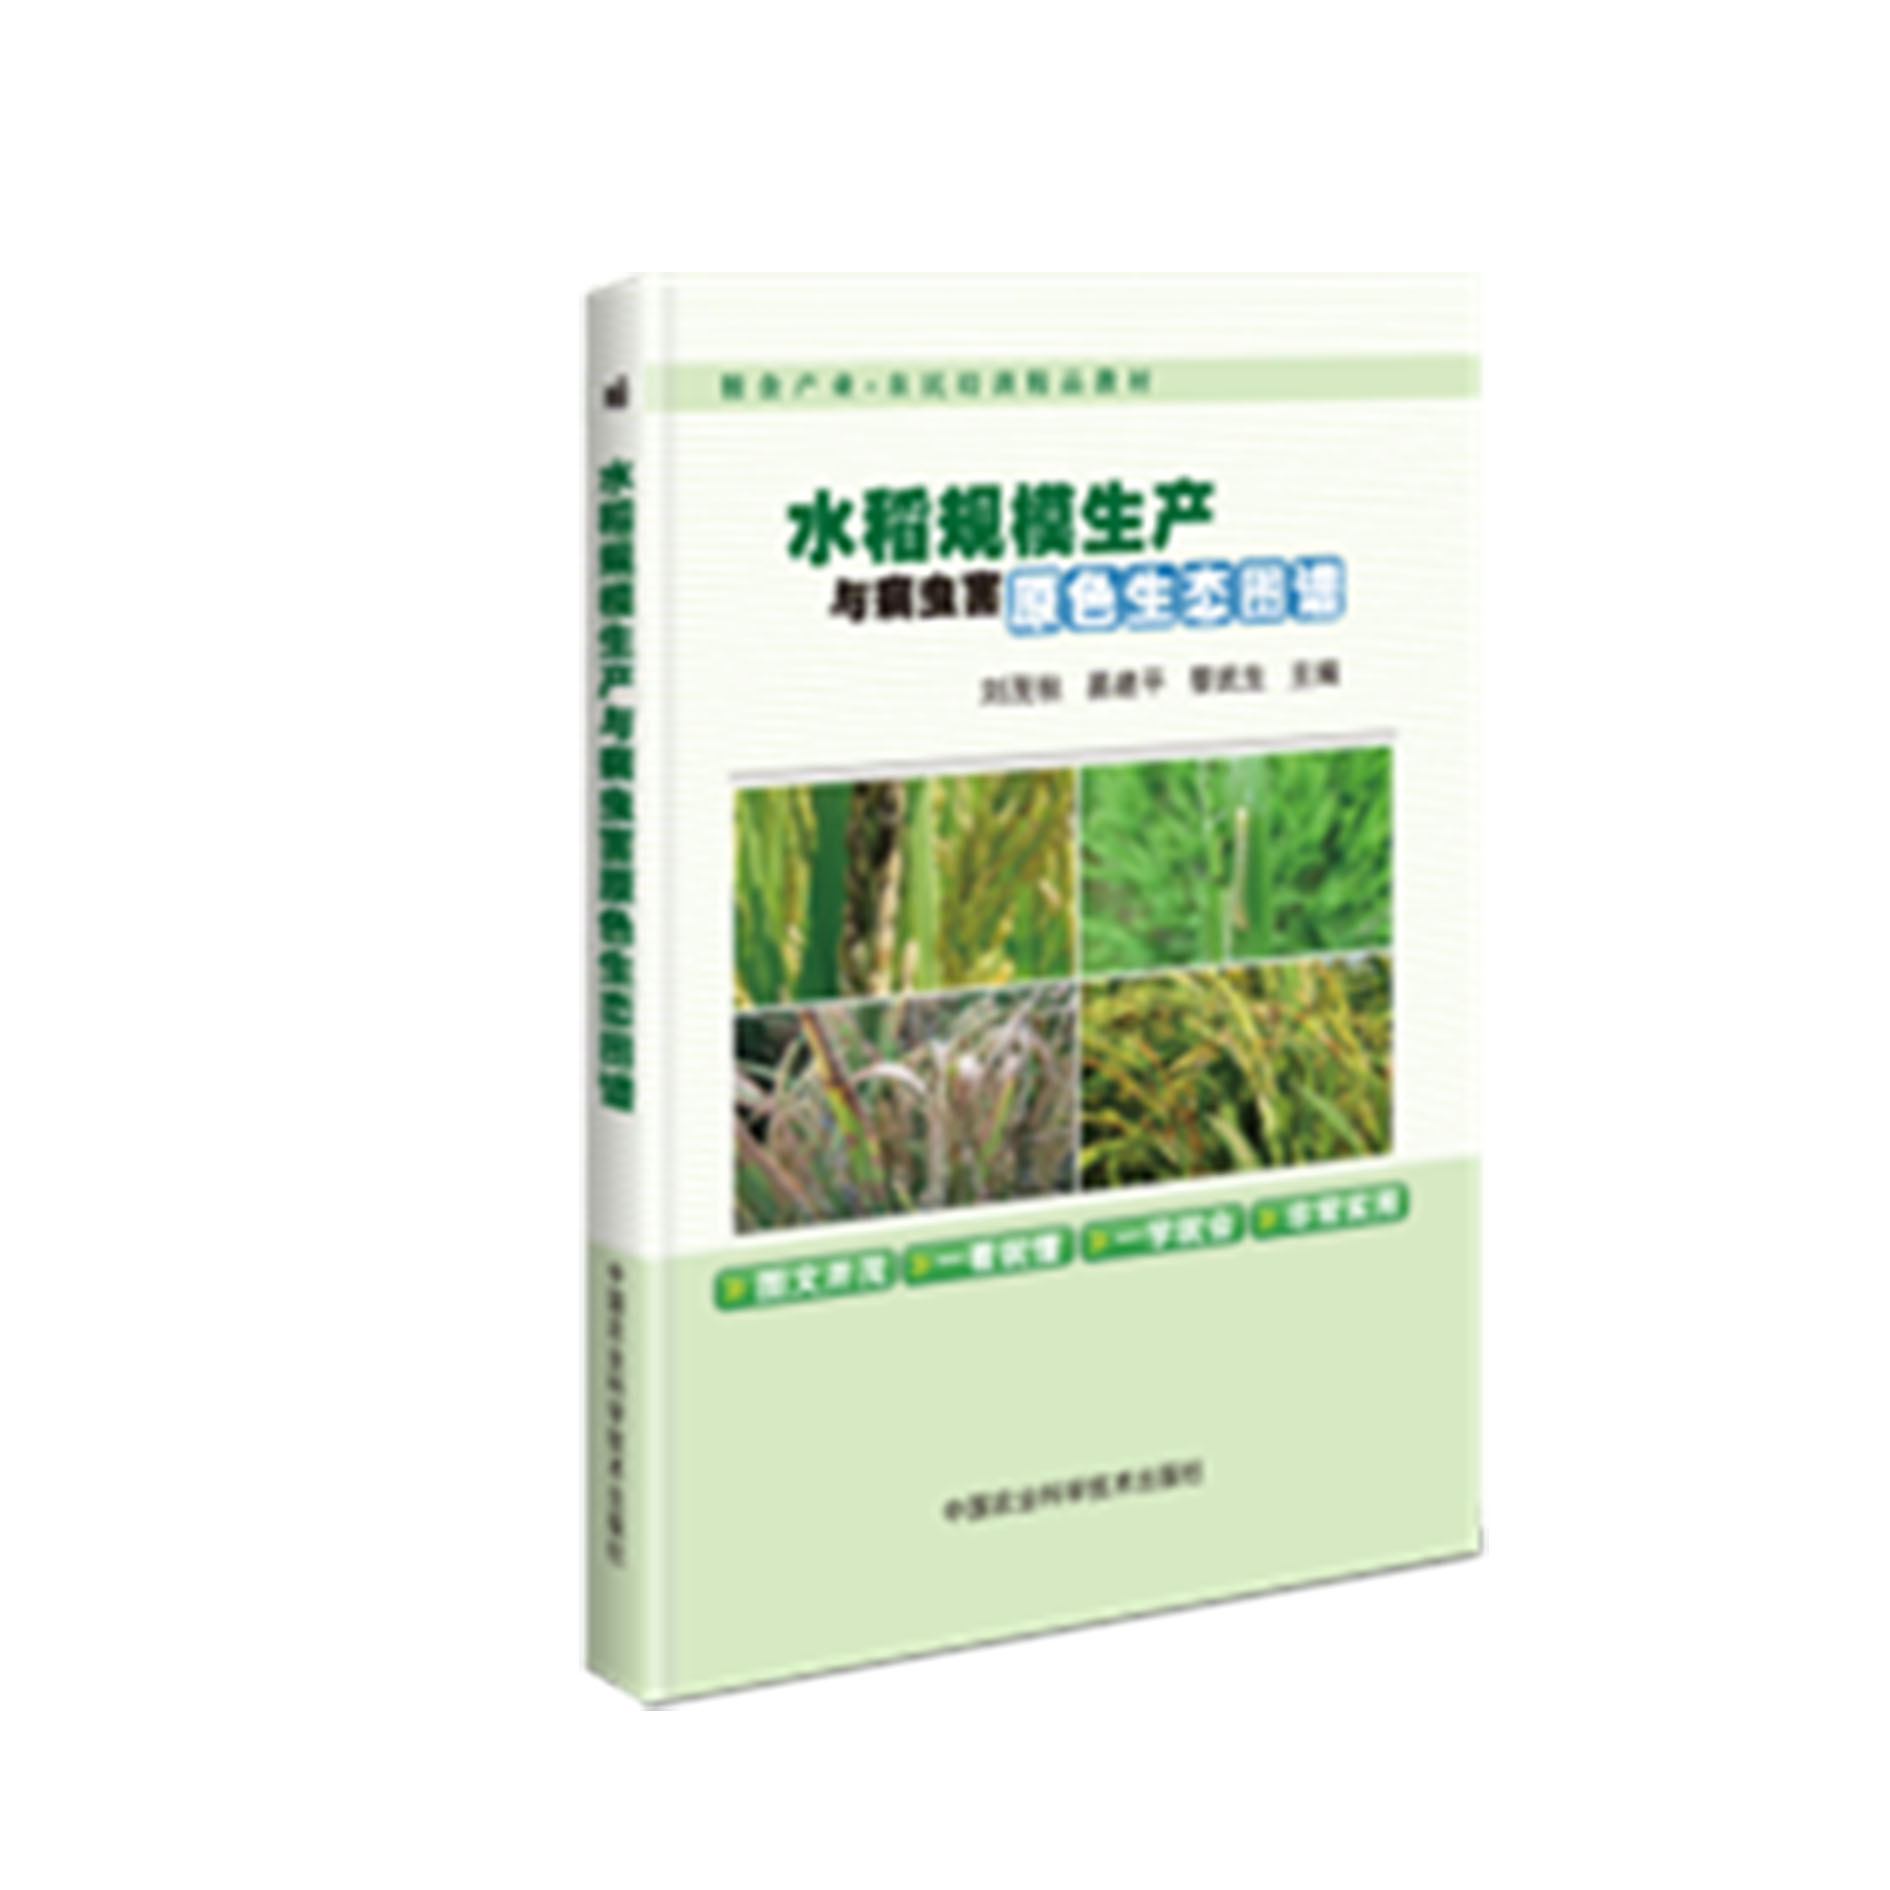 水稻规模生产与病虫害原色生态图谱